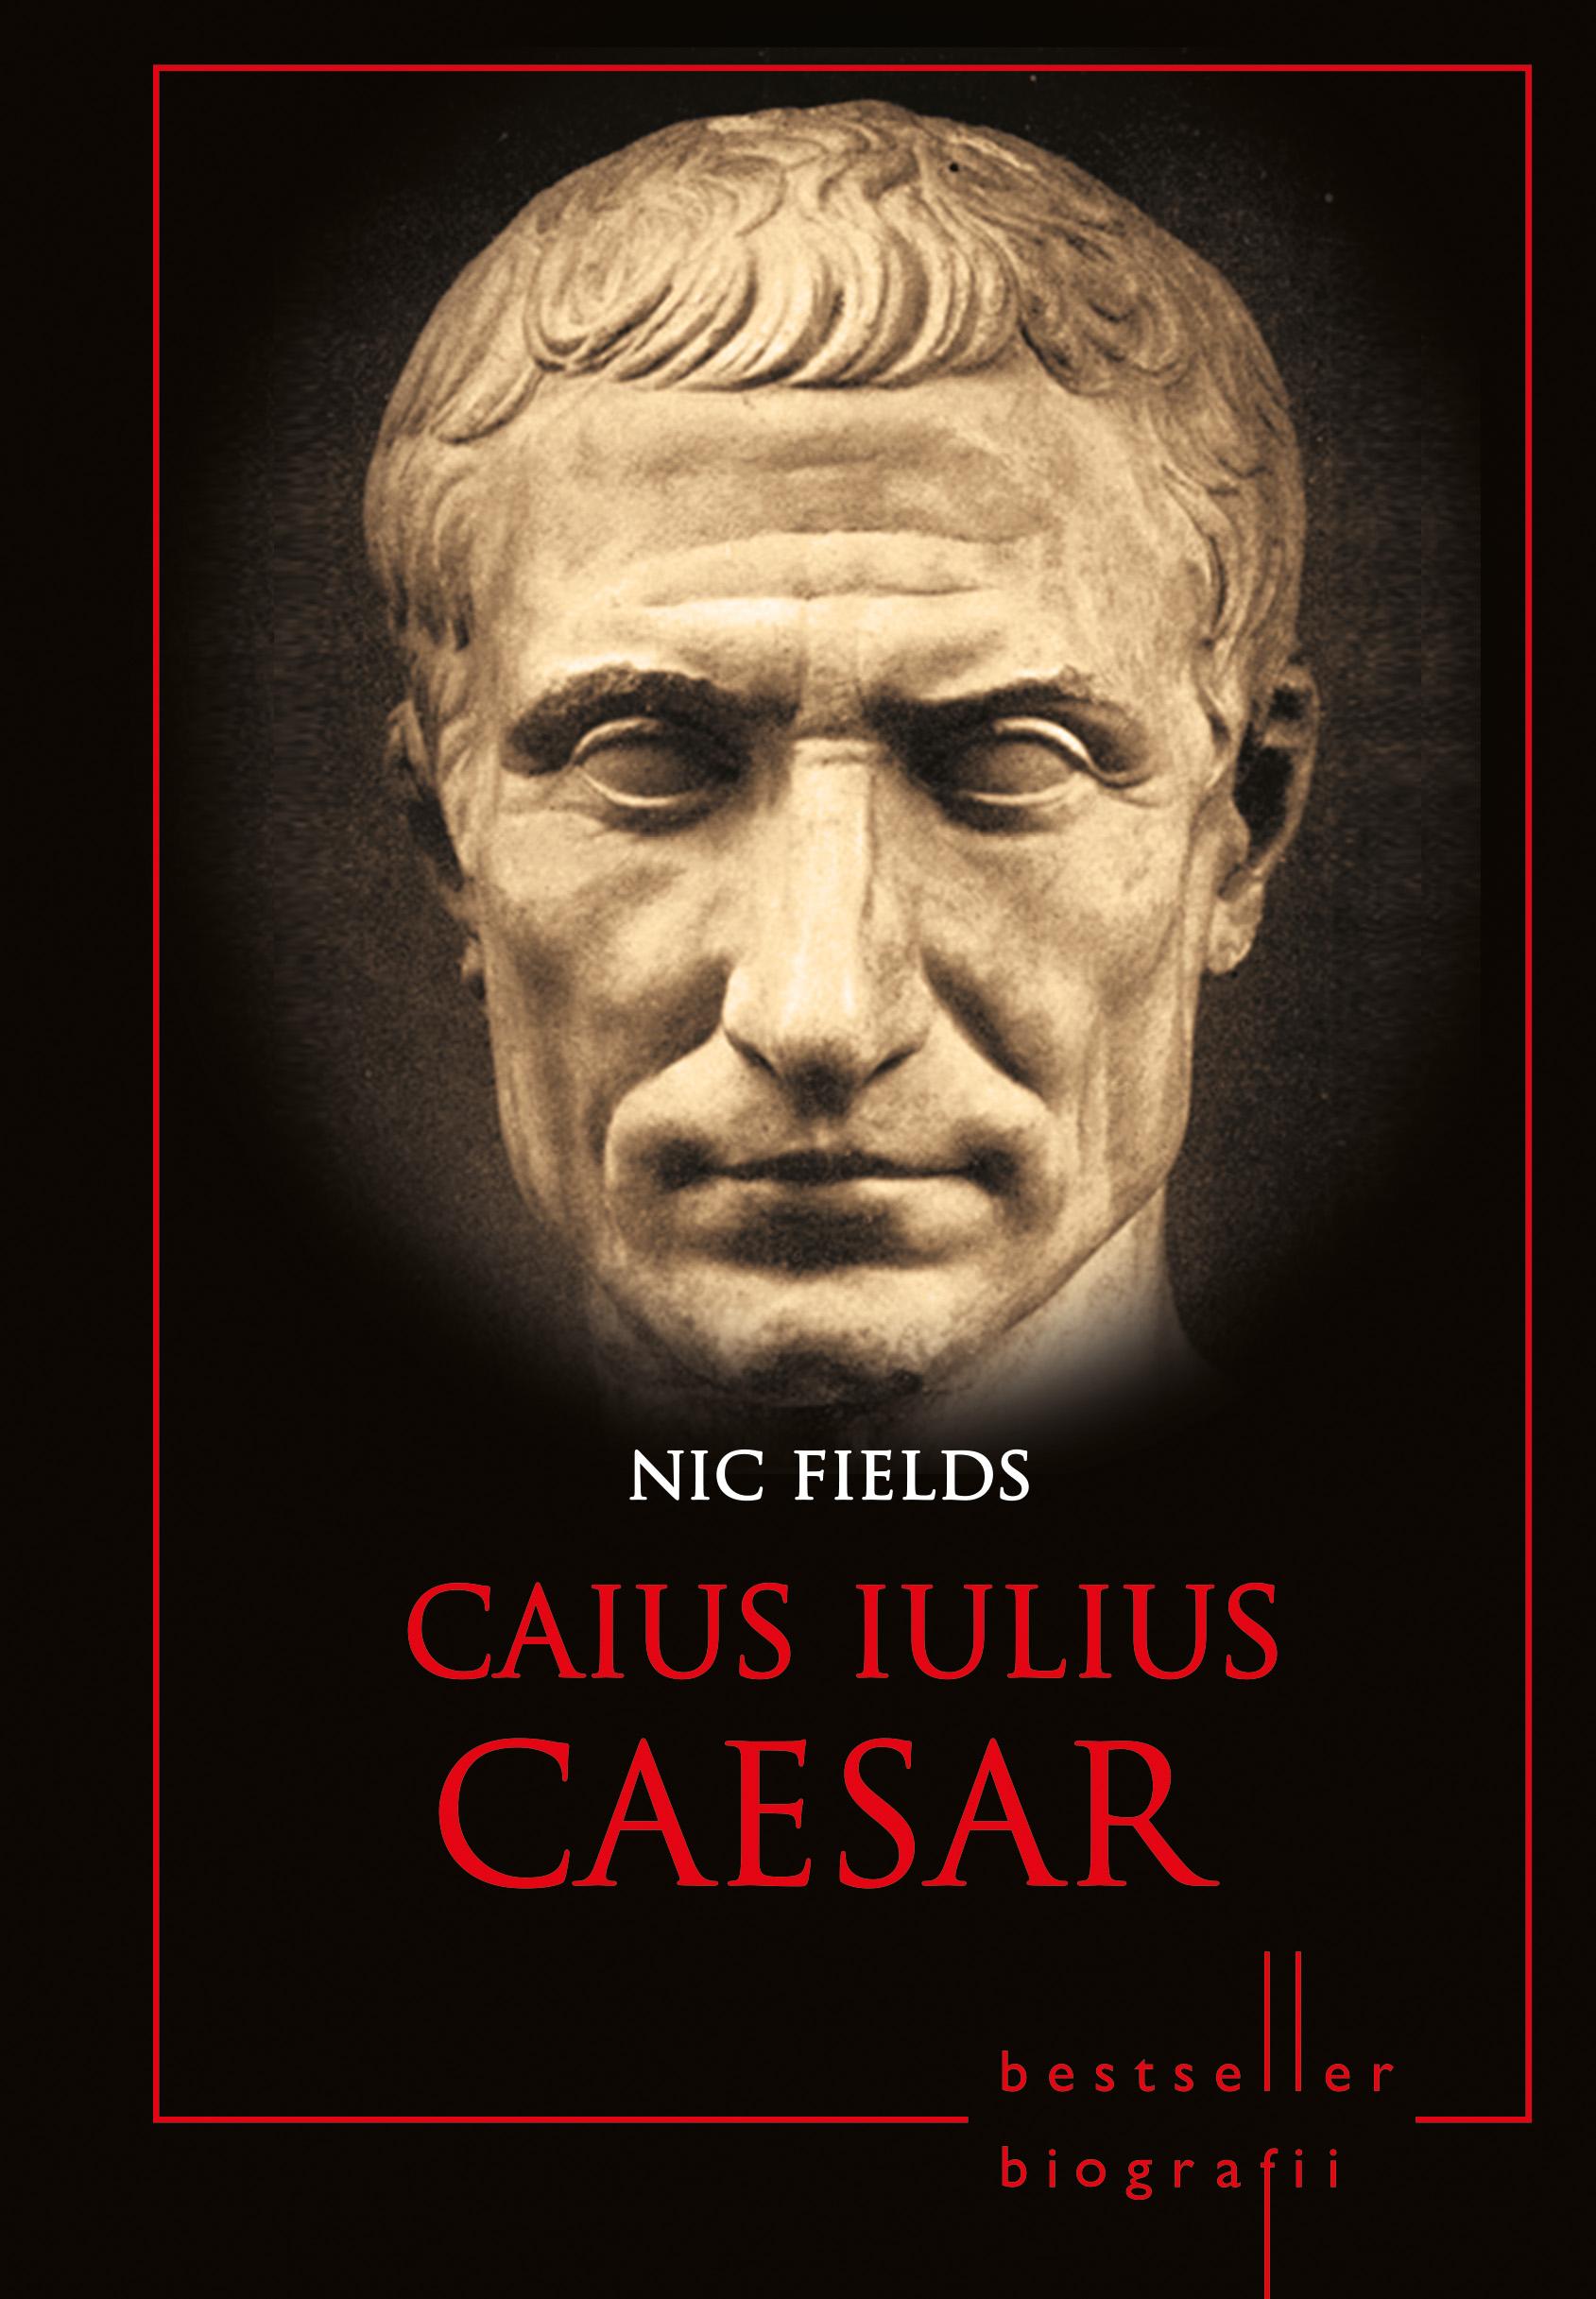 Caius Iulius Caesar, ultimul volum al colecţiei "Bestseller Biografii"